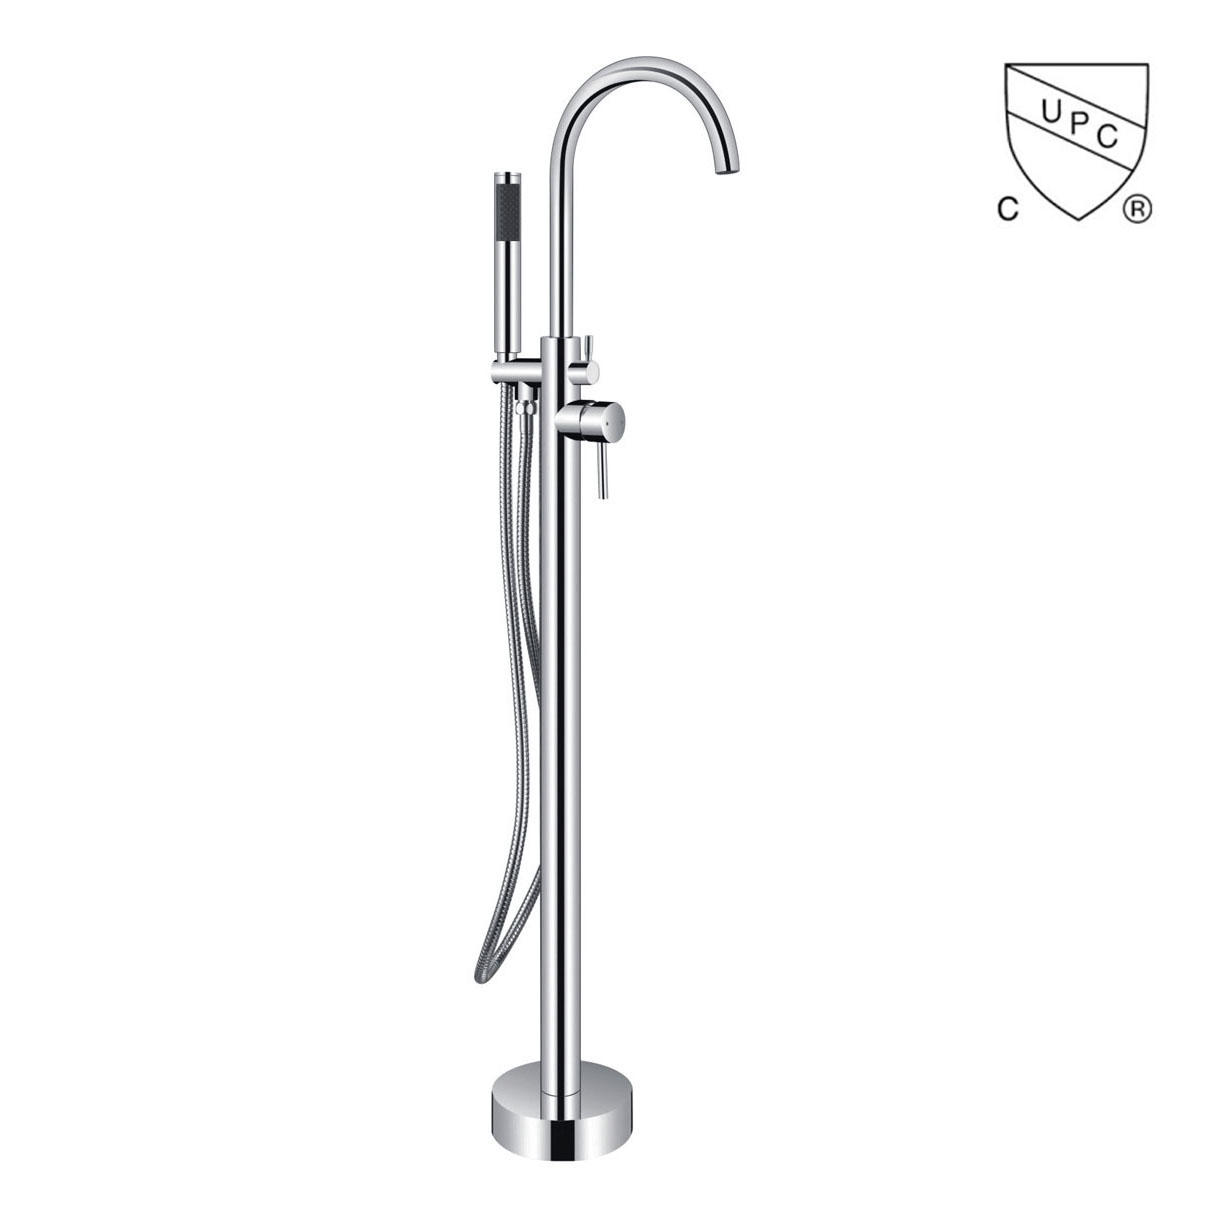 Y0119 UPC, robinet pentru cadă de sine stătător certificat CUPC, robinet pentru cadă cu montare pe podea;